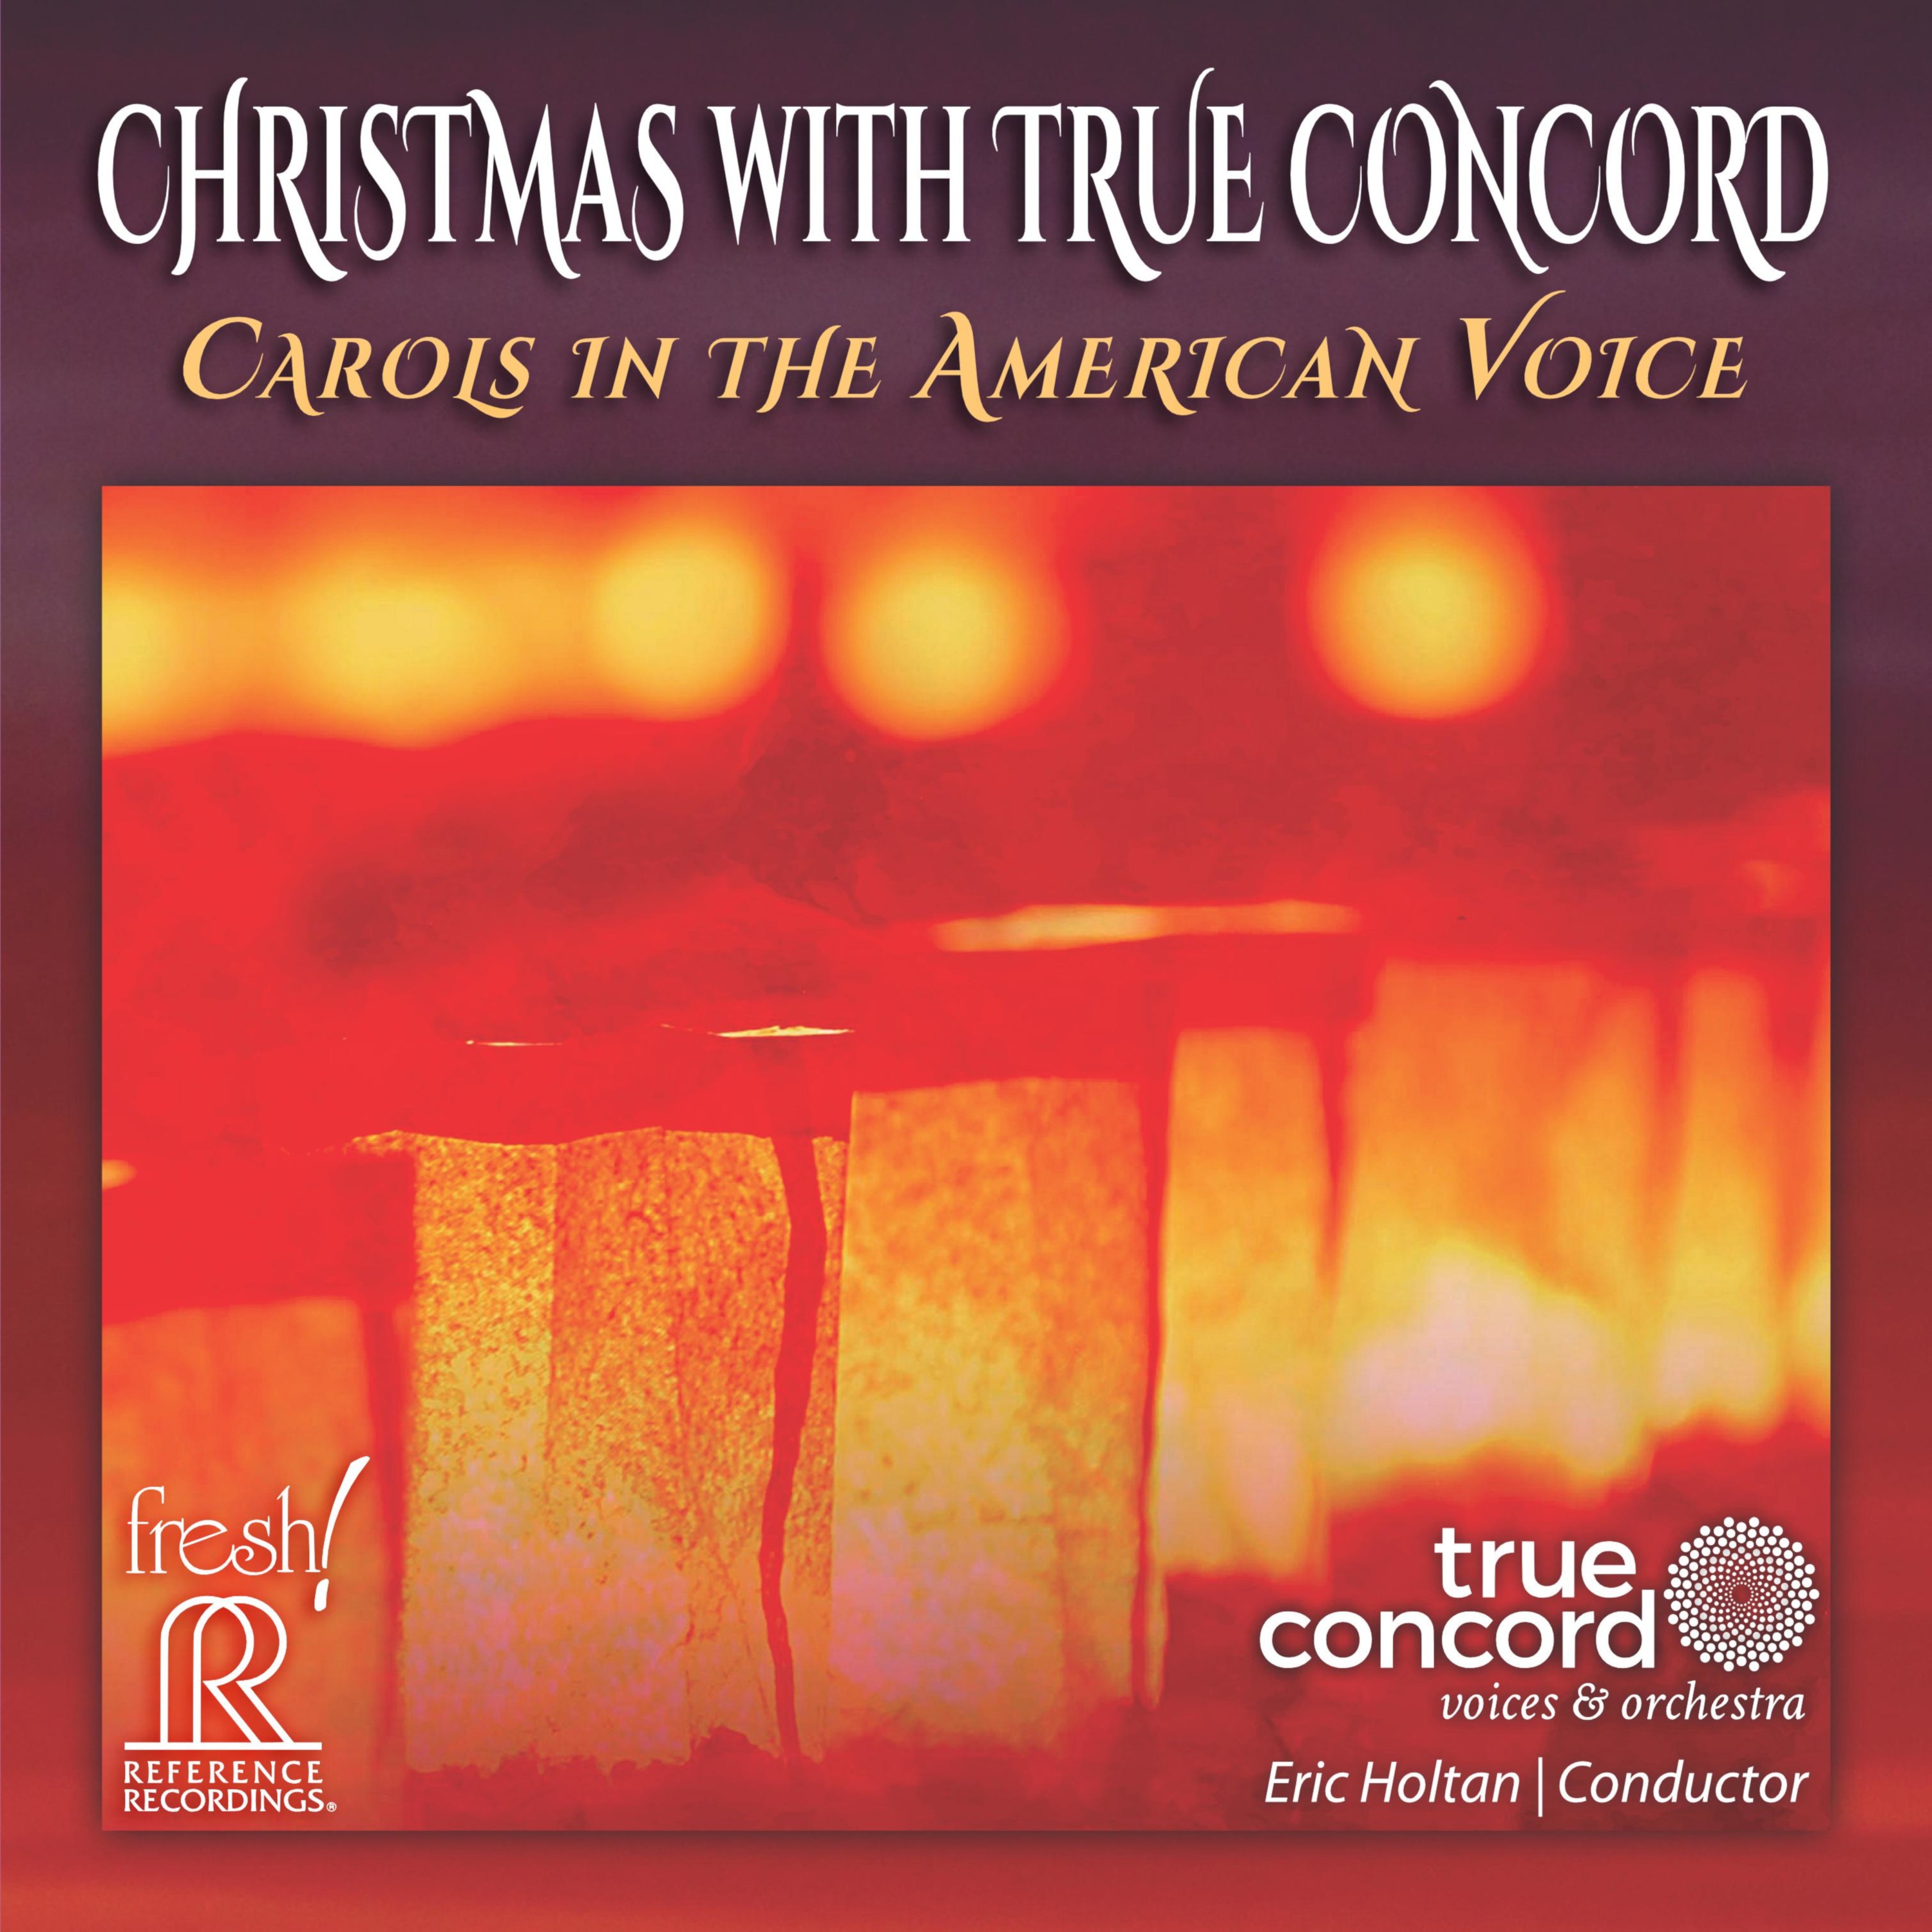 true-concord-christmas-album-cover-art